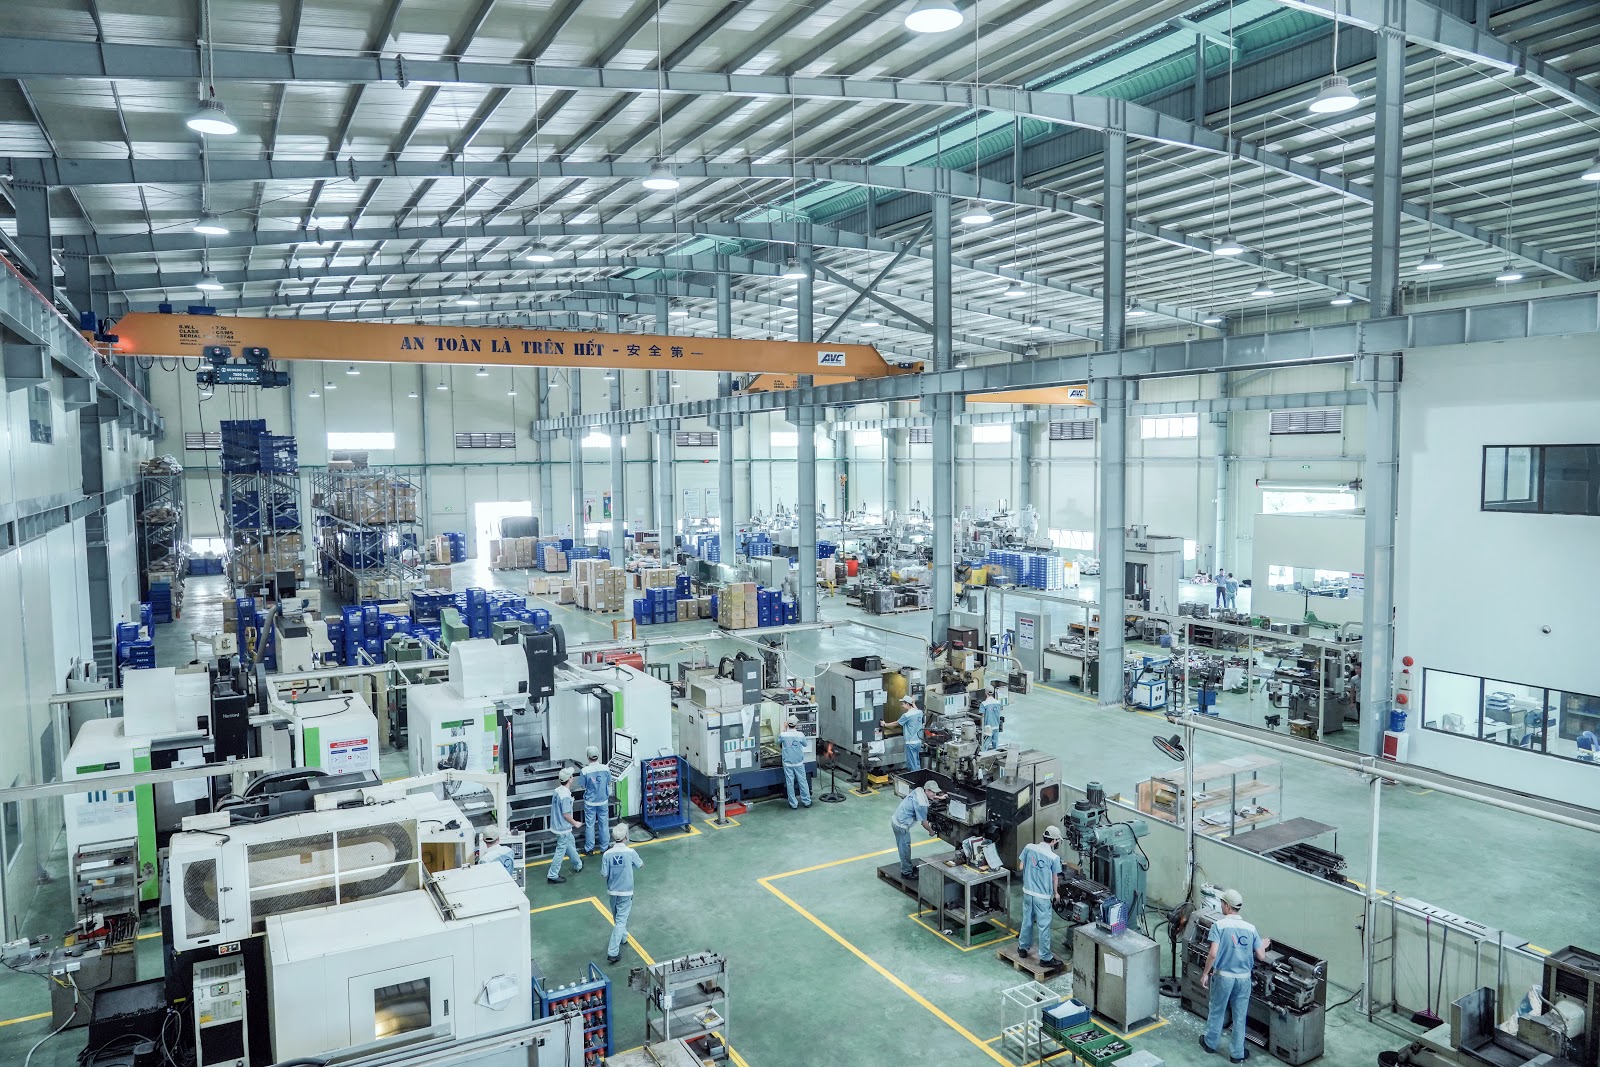 Tình hình phát triển ngành khuôn mẫu Việt Nam hiện nay - Việt Chuẩn dẫn đầu trong các đơn vị sản xuất chế tạo khuôn mẫu tại Việt Nam